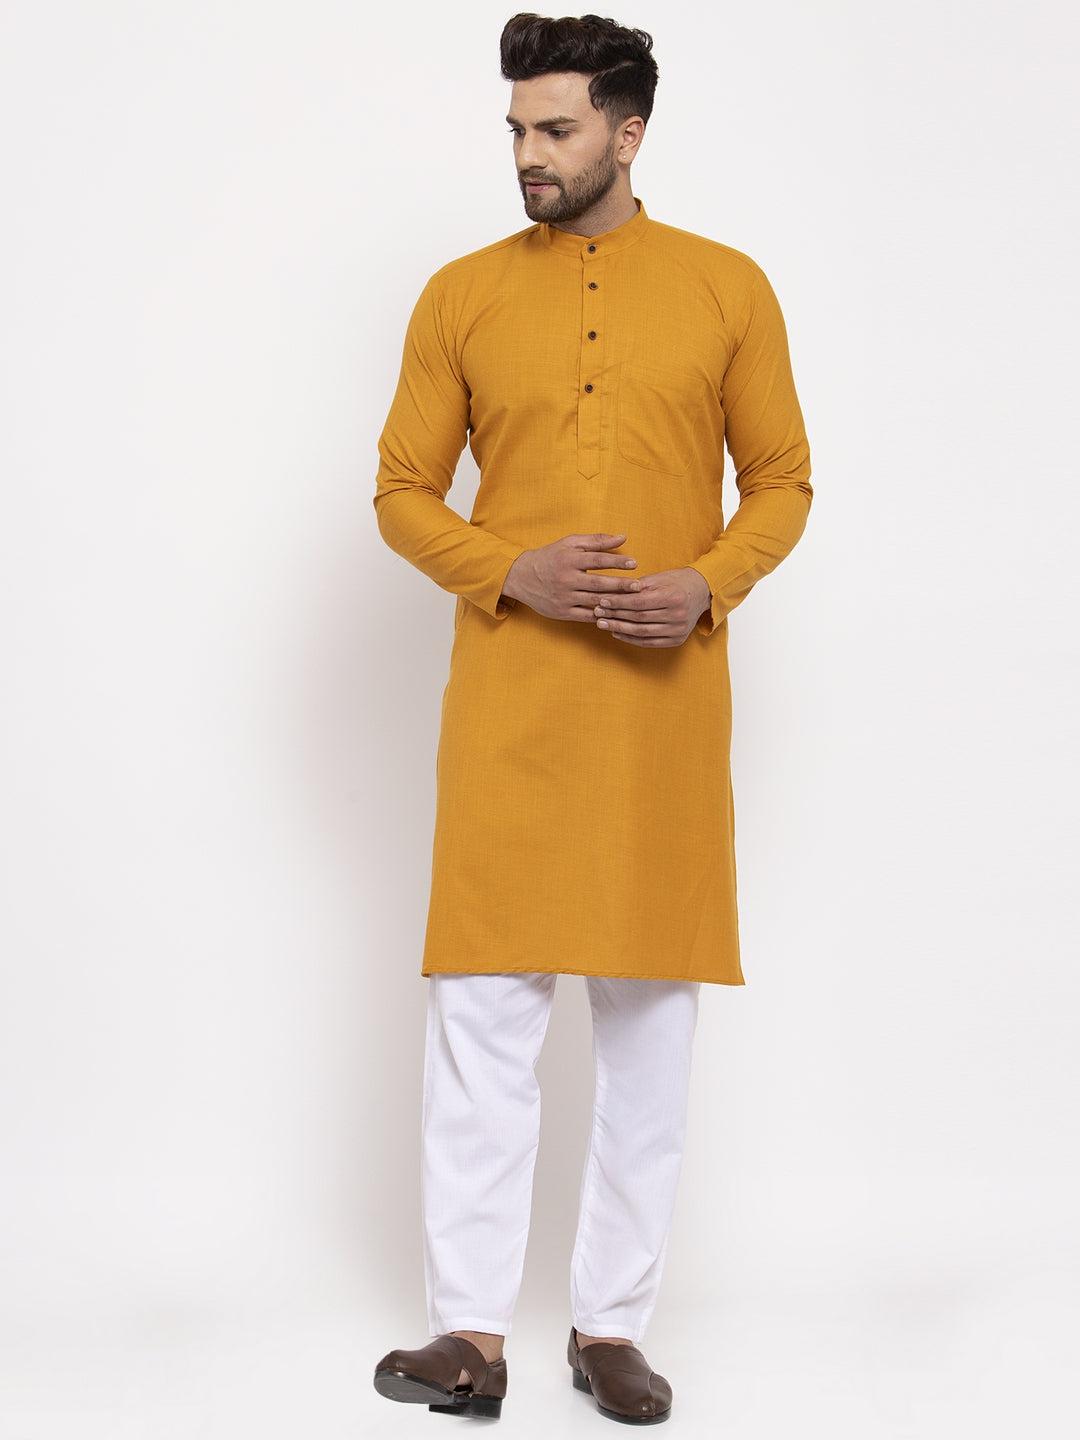 cotton-solid-kurta-pyjama-10408156YL, Men Indian Ethnic Clothing, Cotton Men Kurta Pyjama Set